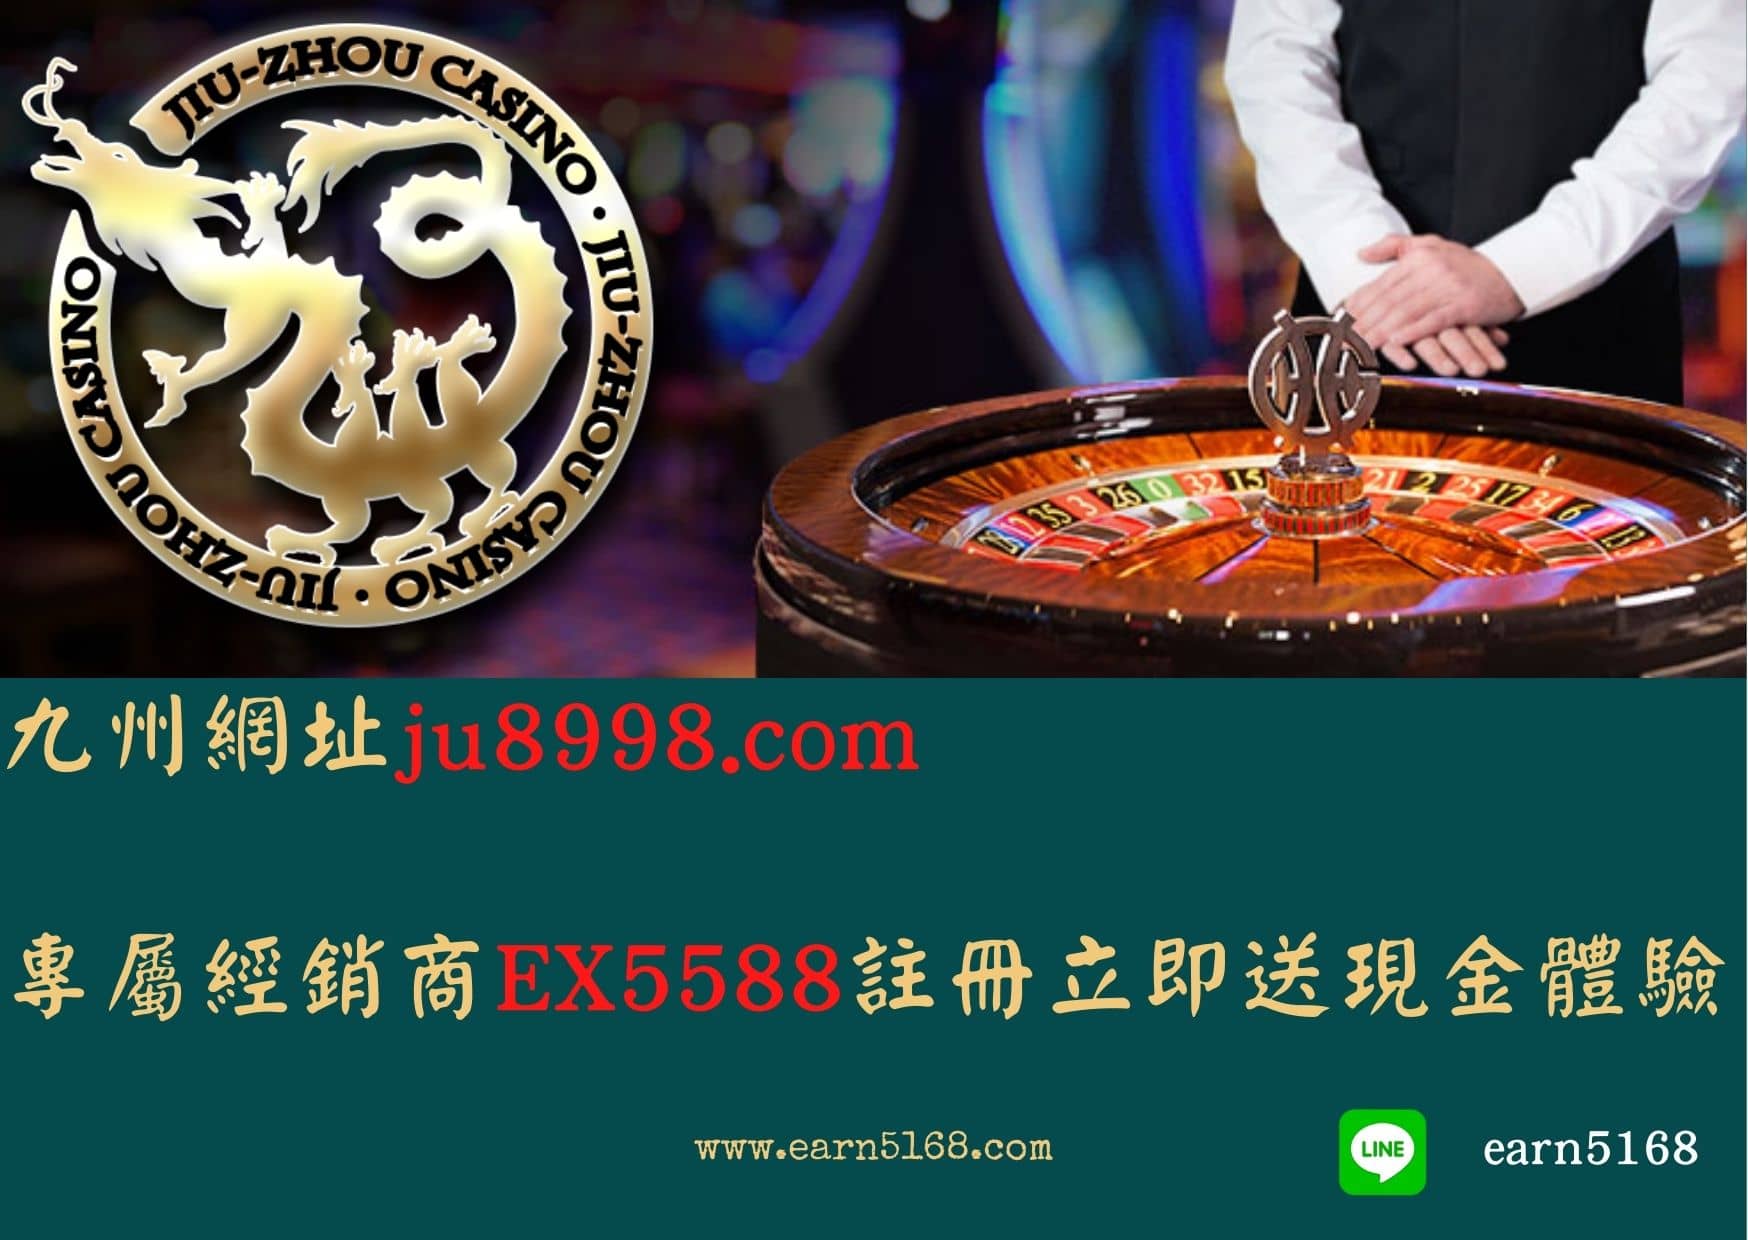 九州網址ju8998.com，專屬經銷商EX5588註冊立即送現金體驗